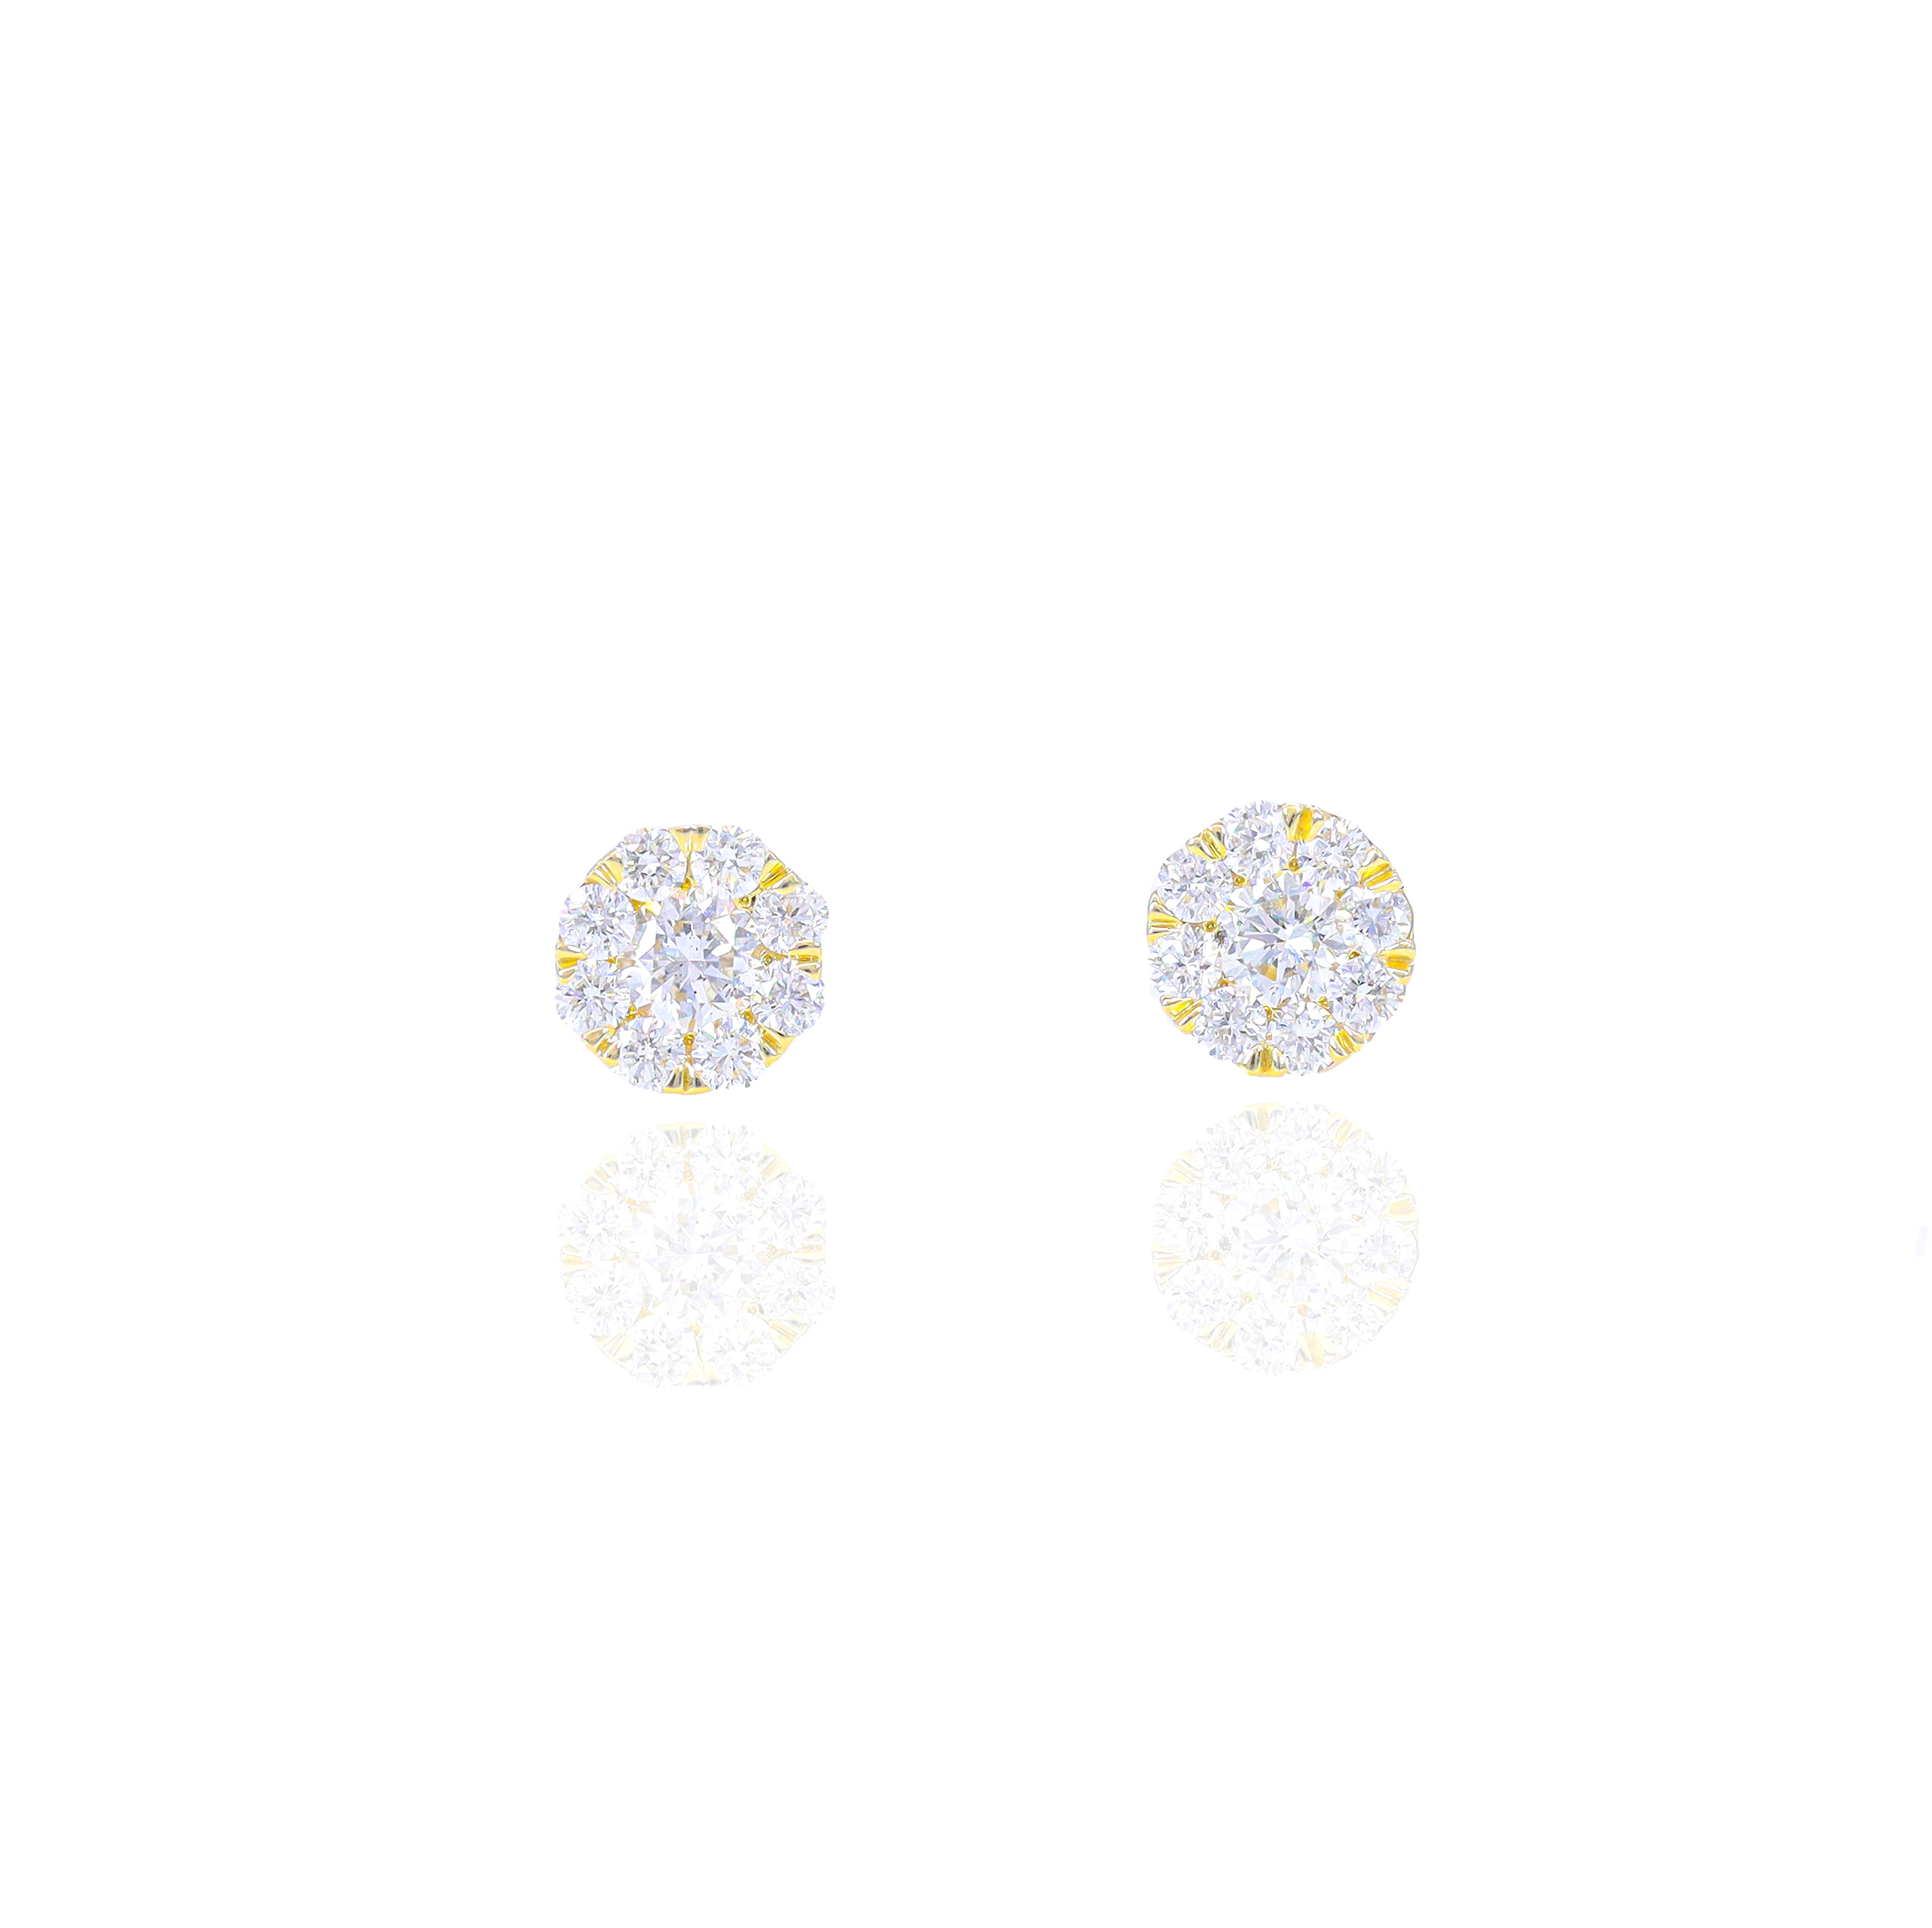 1/2 (Half) Carat Cluster Pauve Diamond Earrings